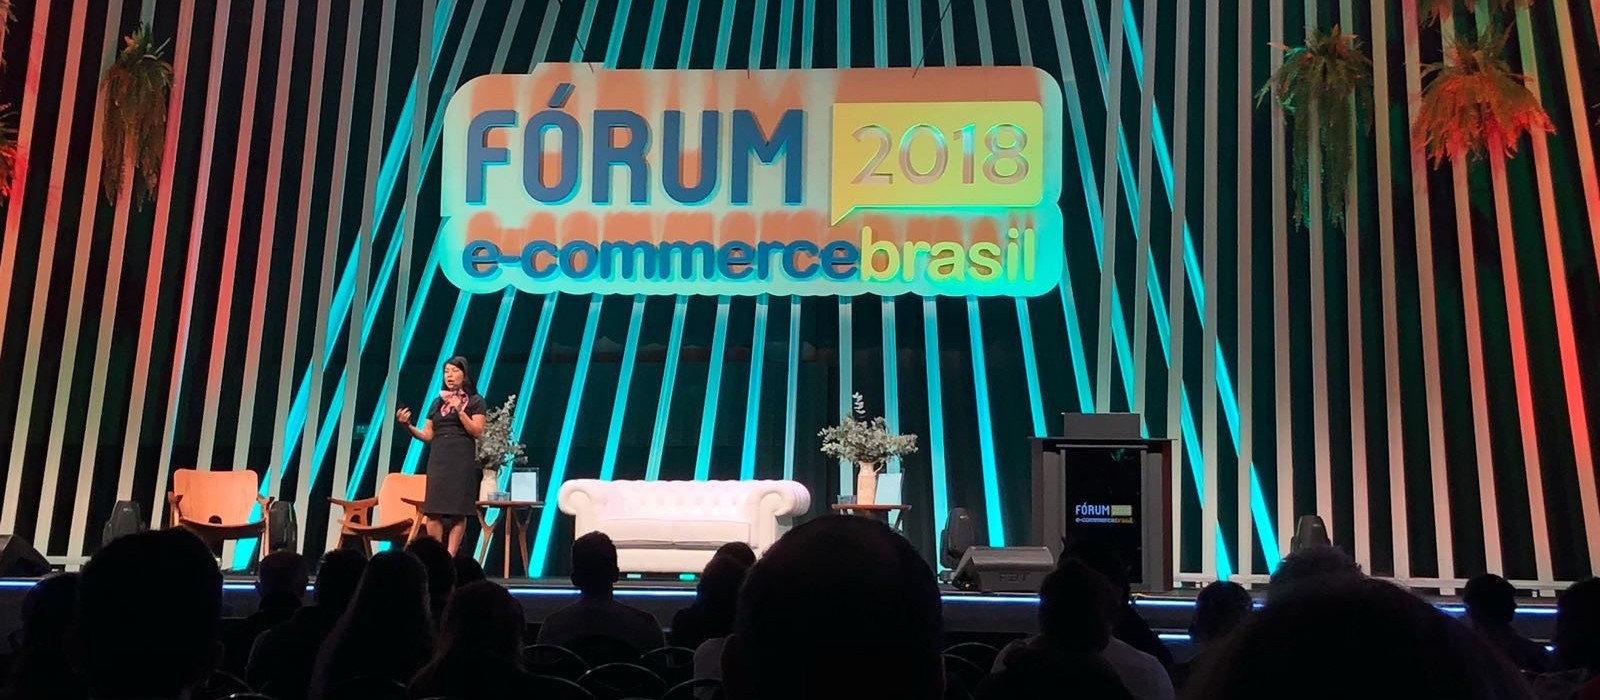 E-Commerce Brasil reúne conteúdo exclusivo para profissionais do comércio eletrônico